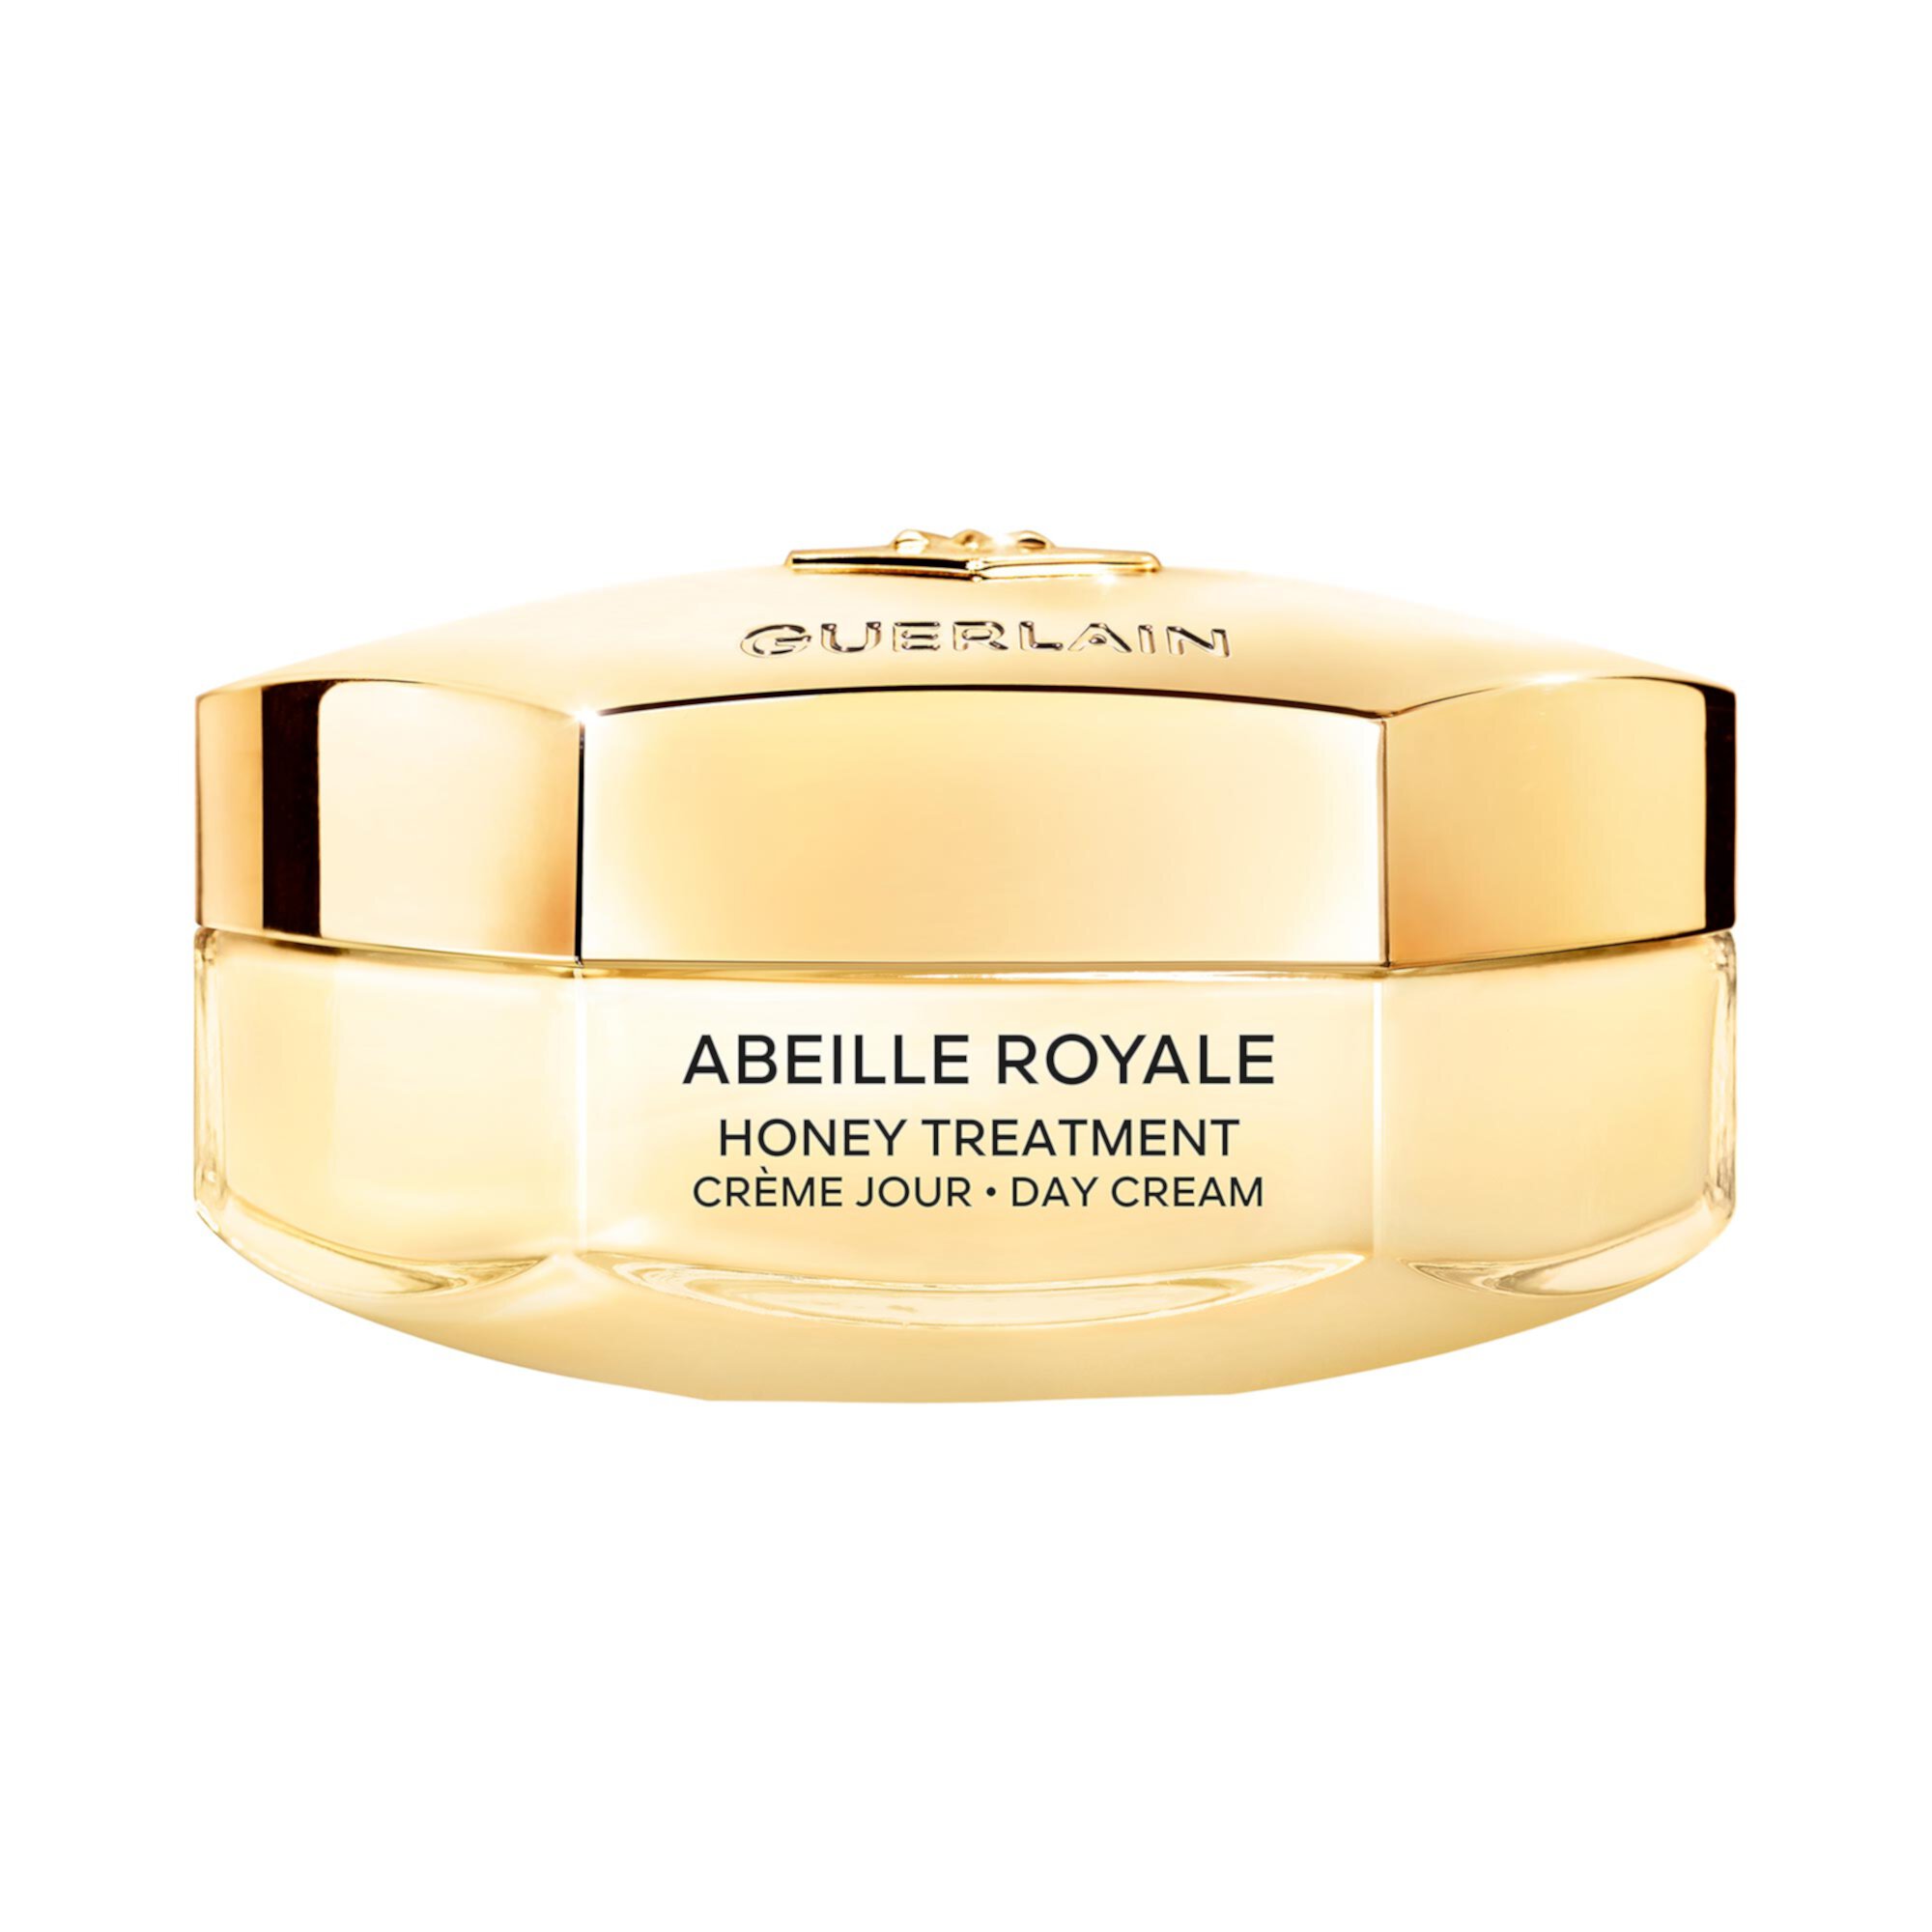 Дневной крем Abeille Royale Honey Treatment с гиалуроновой кислотой Guerlain